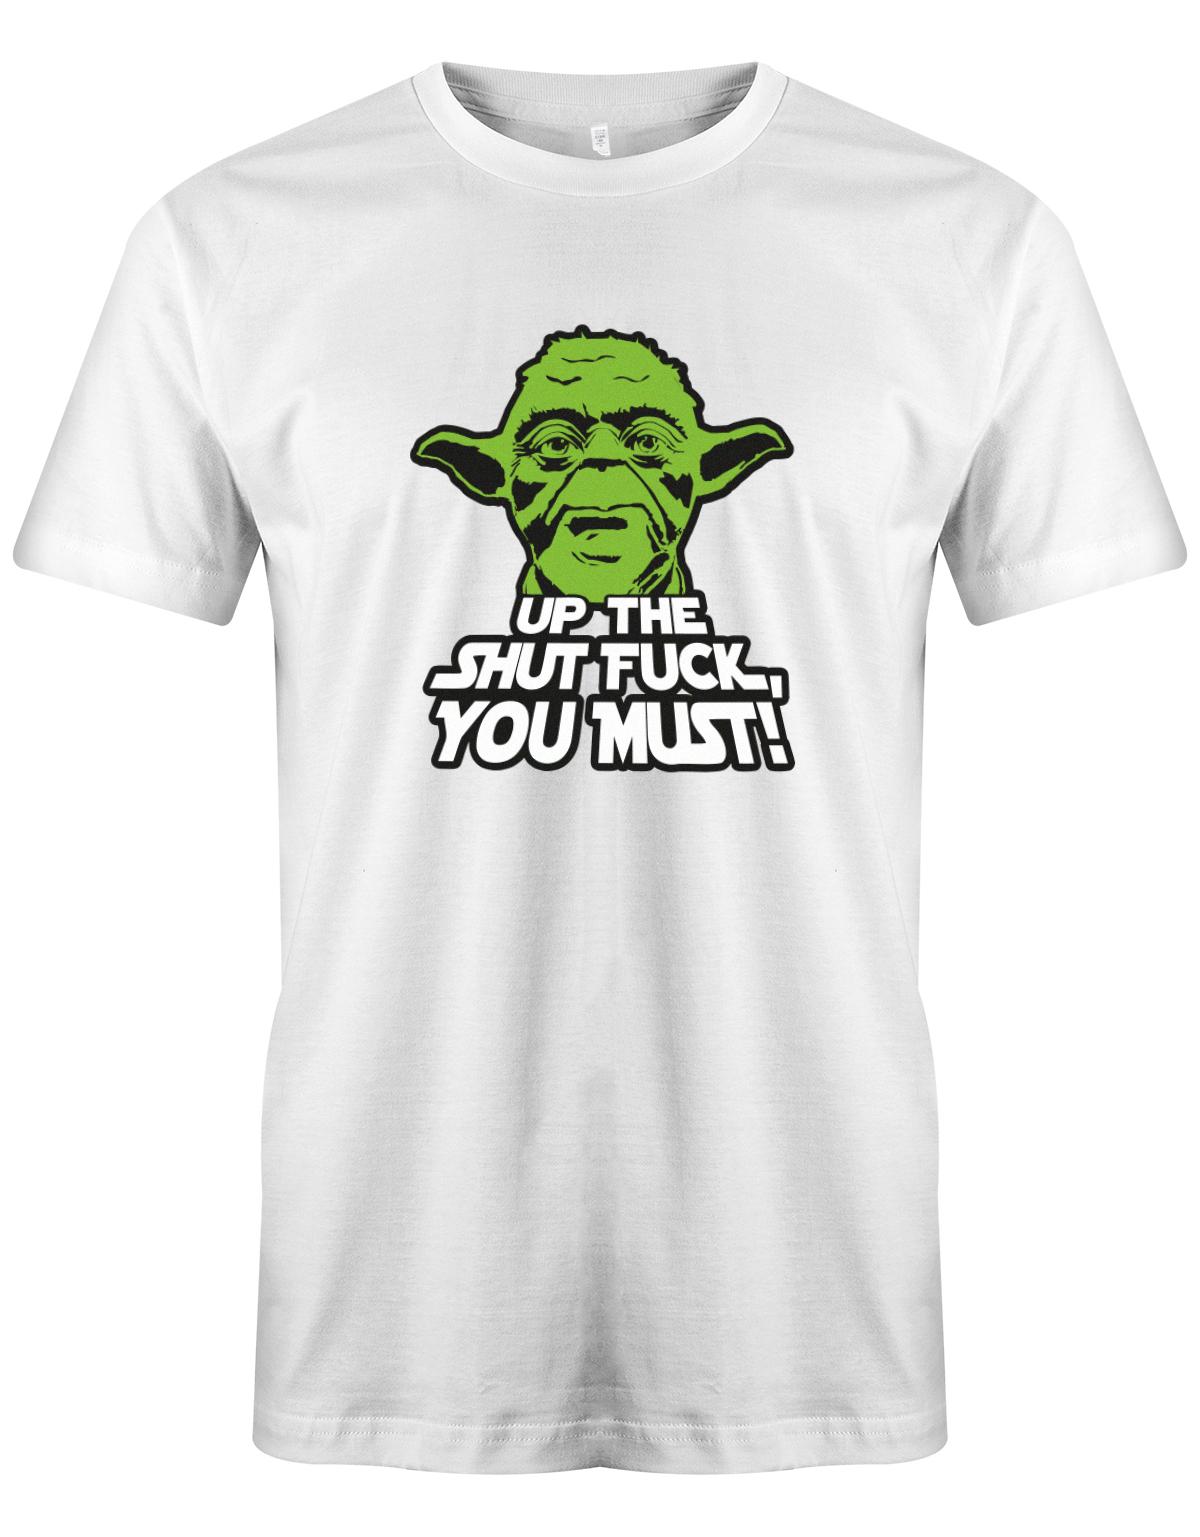 Up-The-Shut-fuck-you-must-Yoda-Shirt-weiss